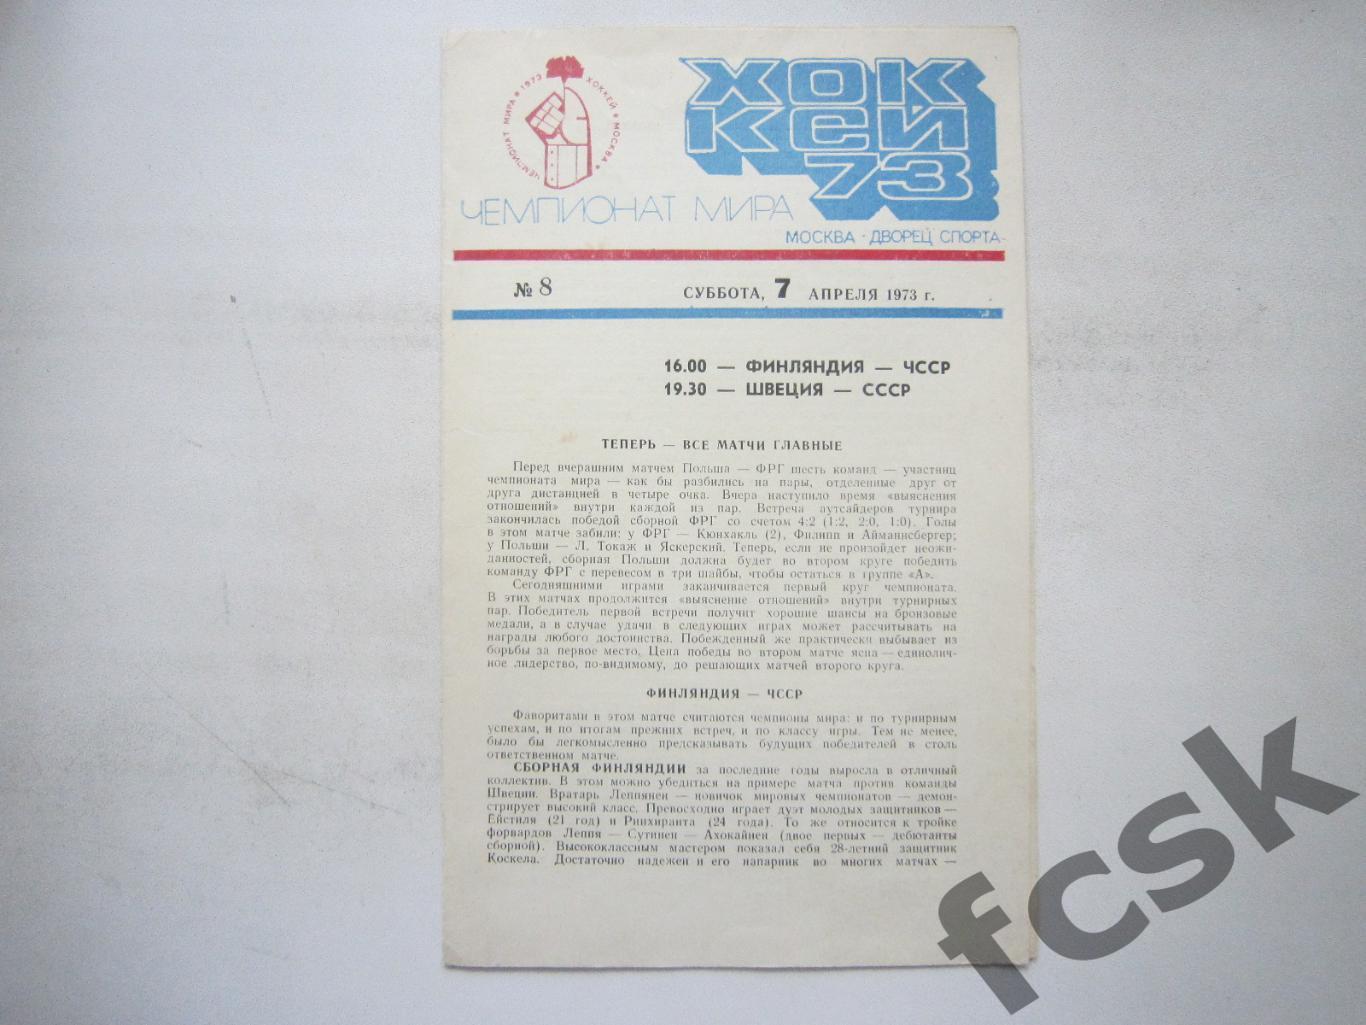 Чемпионат Мира 1973 ЧМ 73 Финландия - ЧССР / Швеция - СССР 07.04.1973 (*)